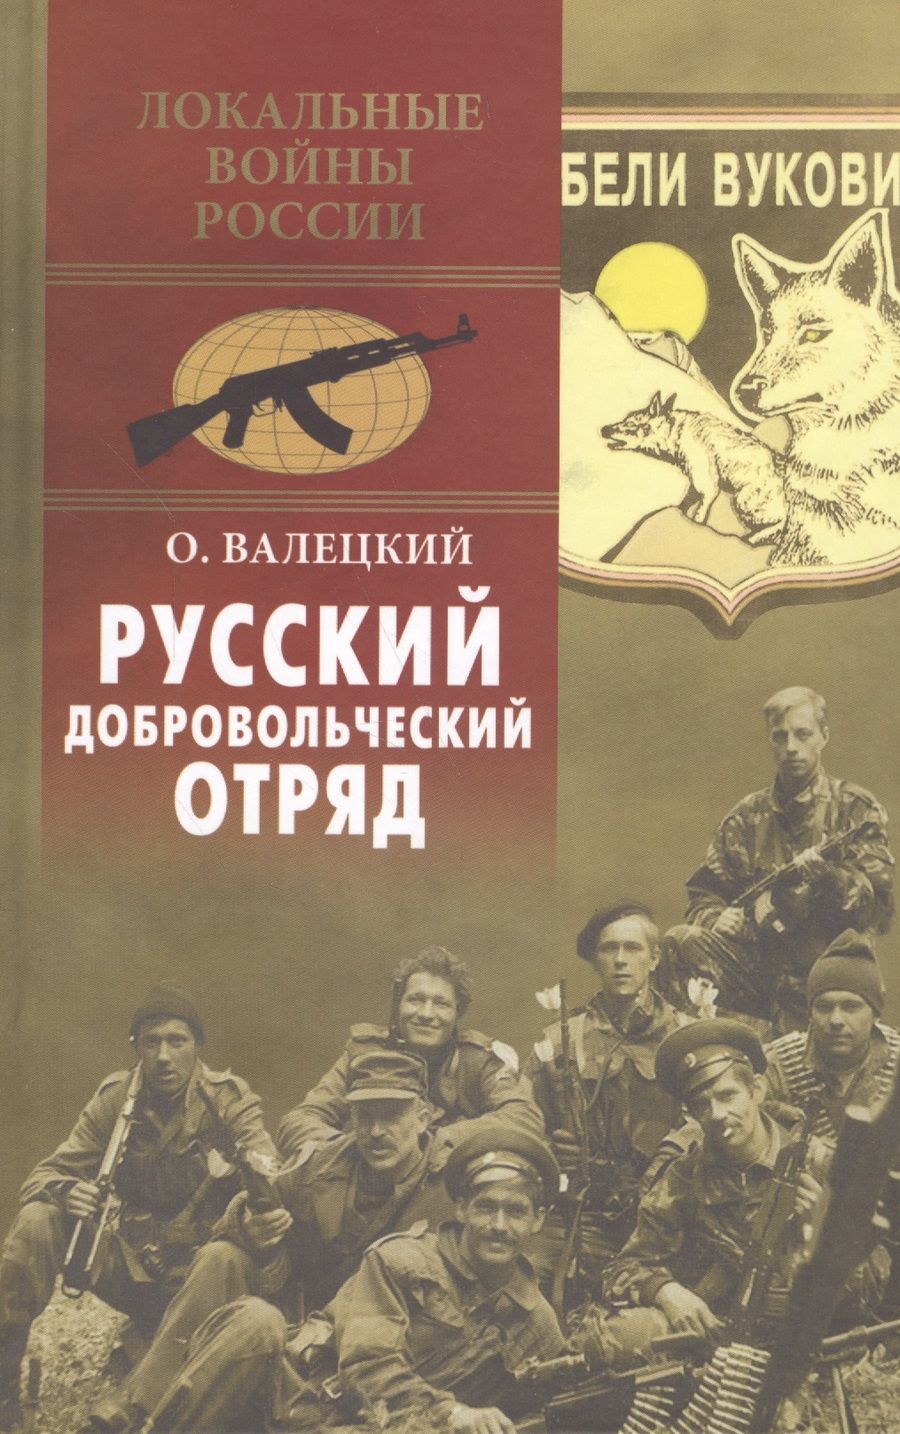 Обложка книги "Олег Валецкий: Русский добровольческий отряд"